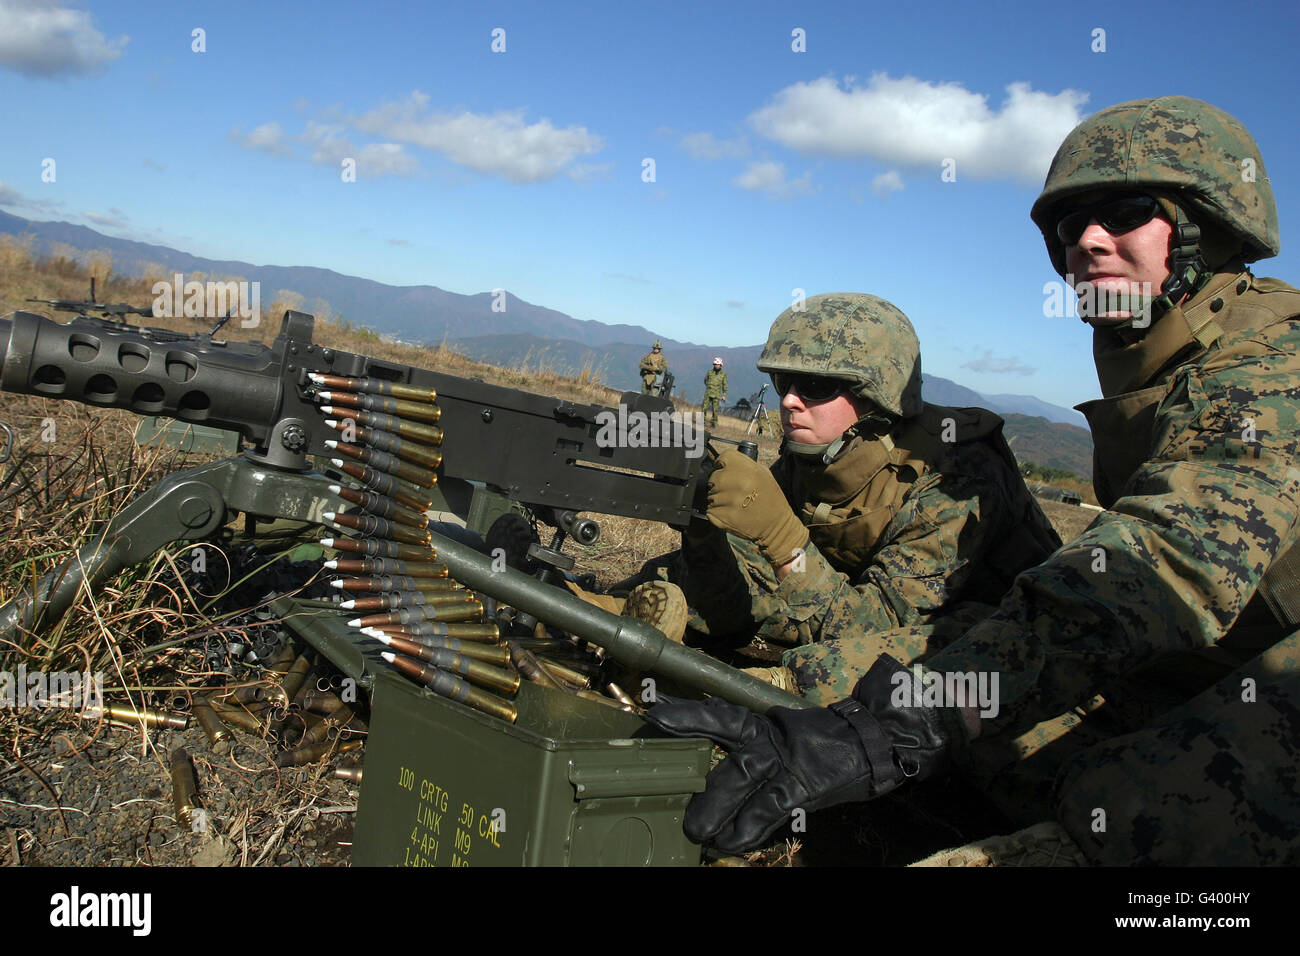 A soldier fires an M2 .50 caliber machine gun. Stock Photo